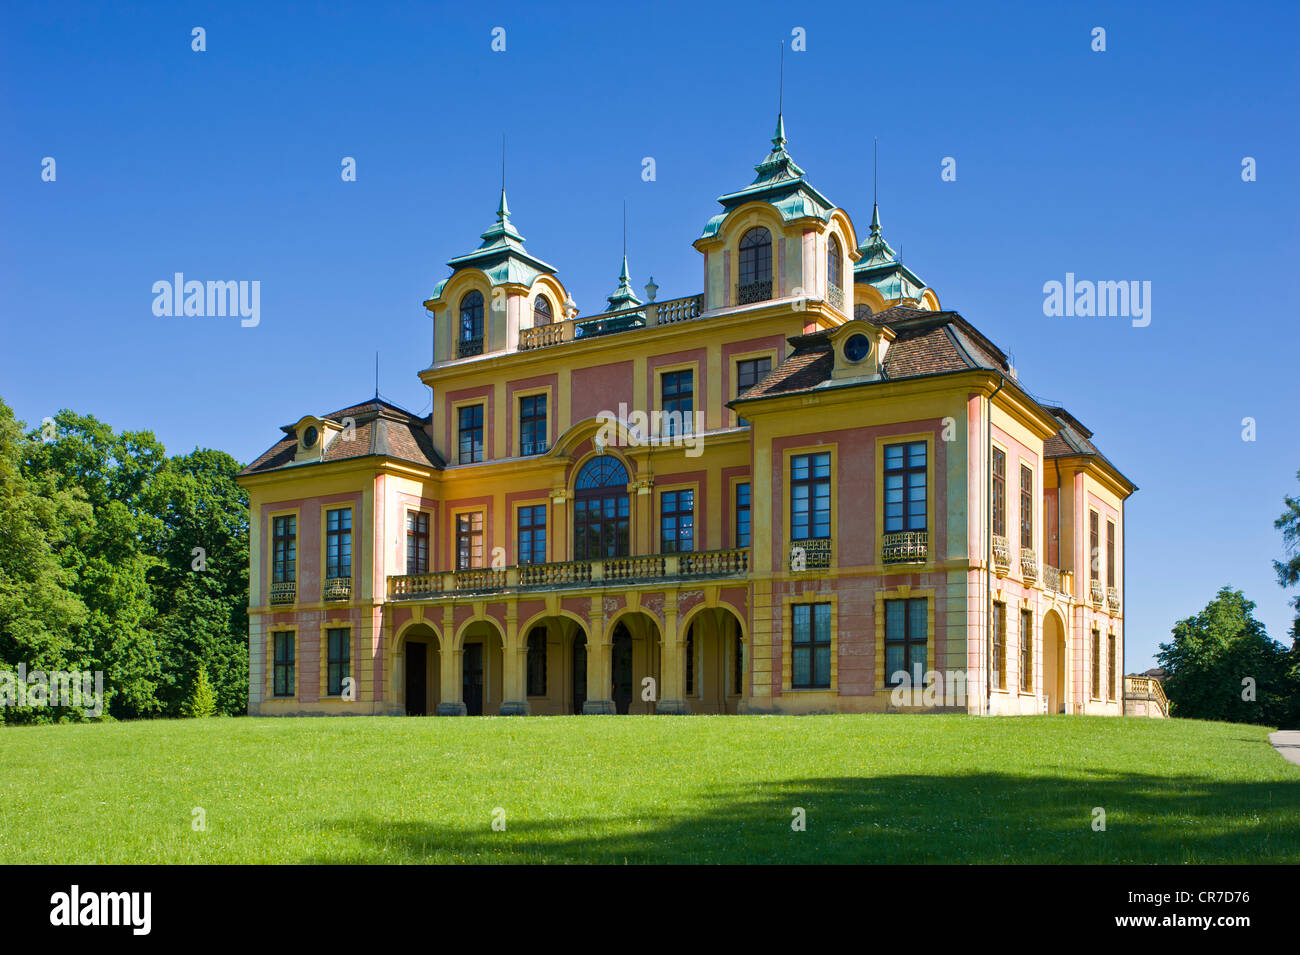 Schloss Favorite Palace, Ludwigsburg, le Neckar, Bade-Wurtemberg, Allemagne, Europe Banque D'Images